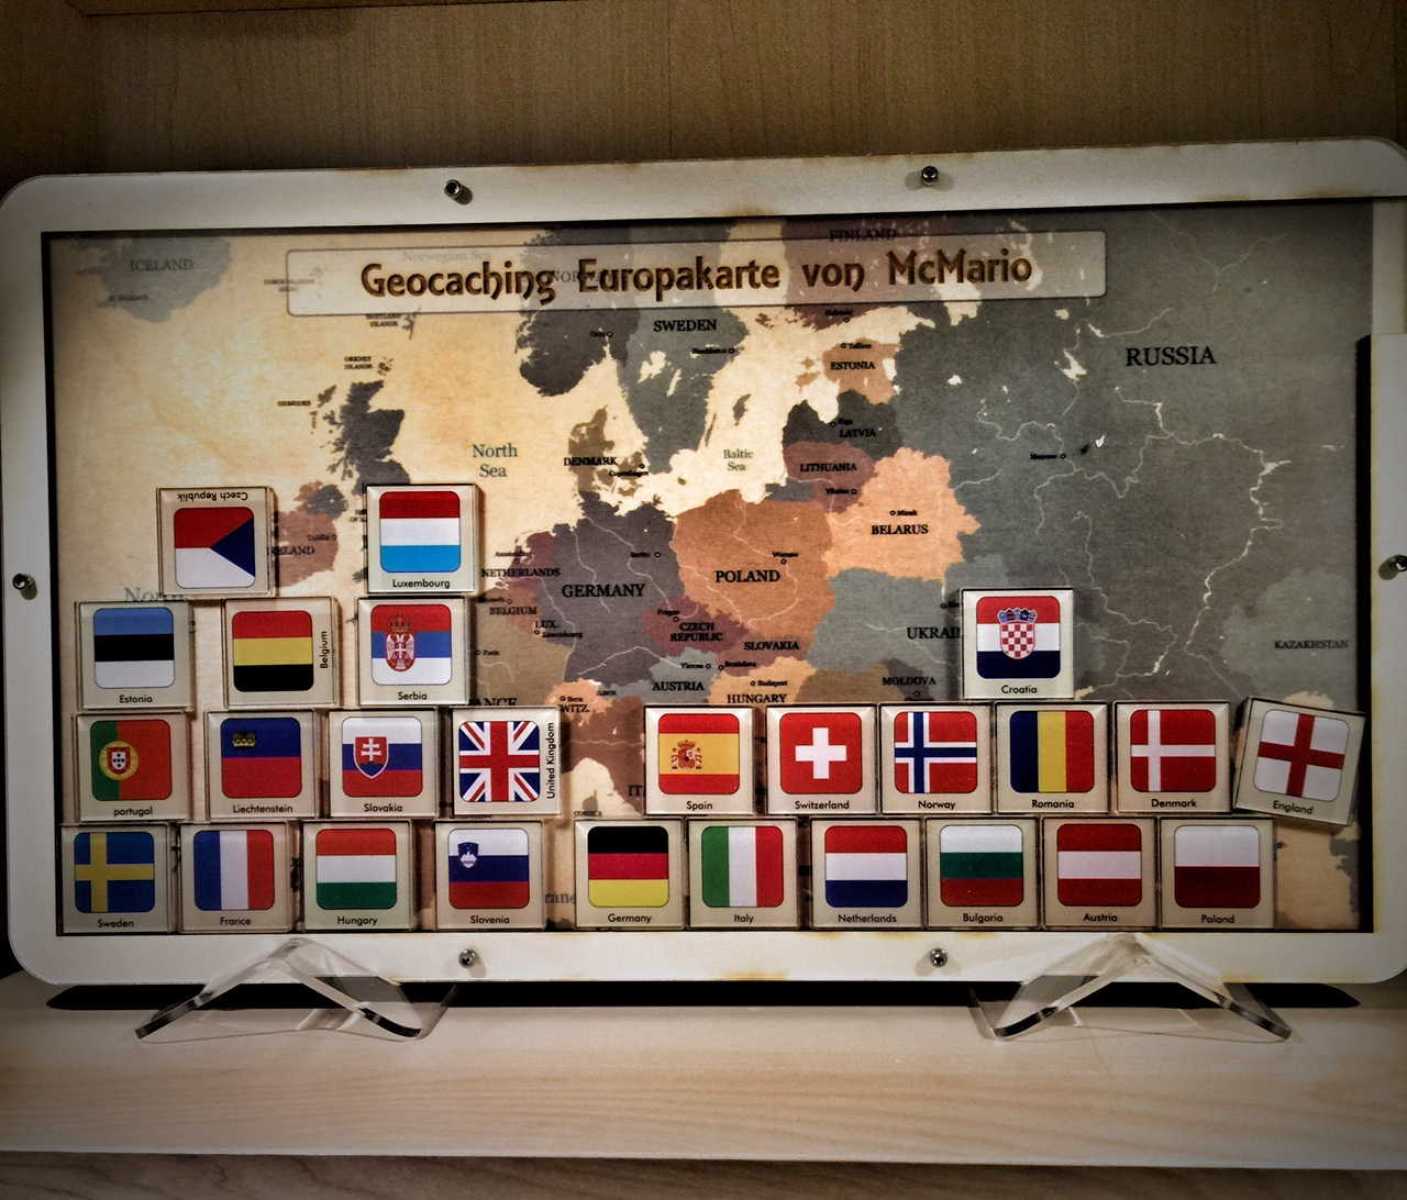 Die grosse "Geocaching-Europakarte"